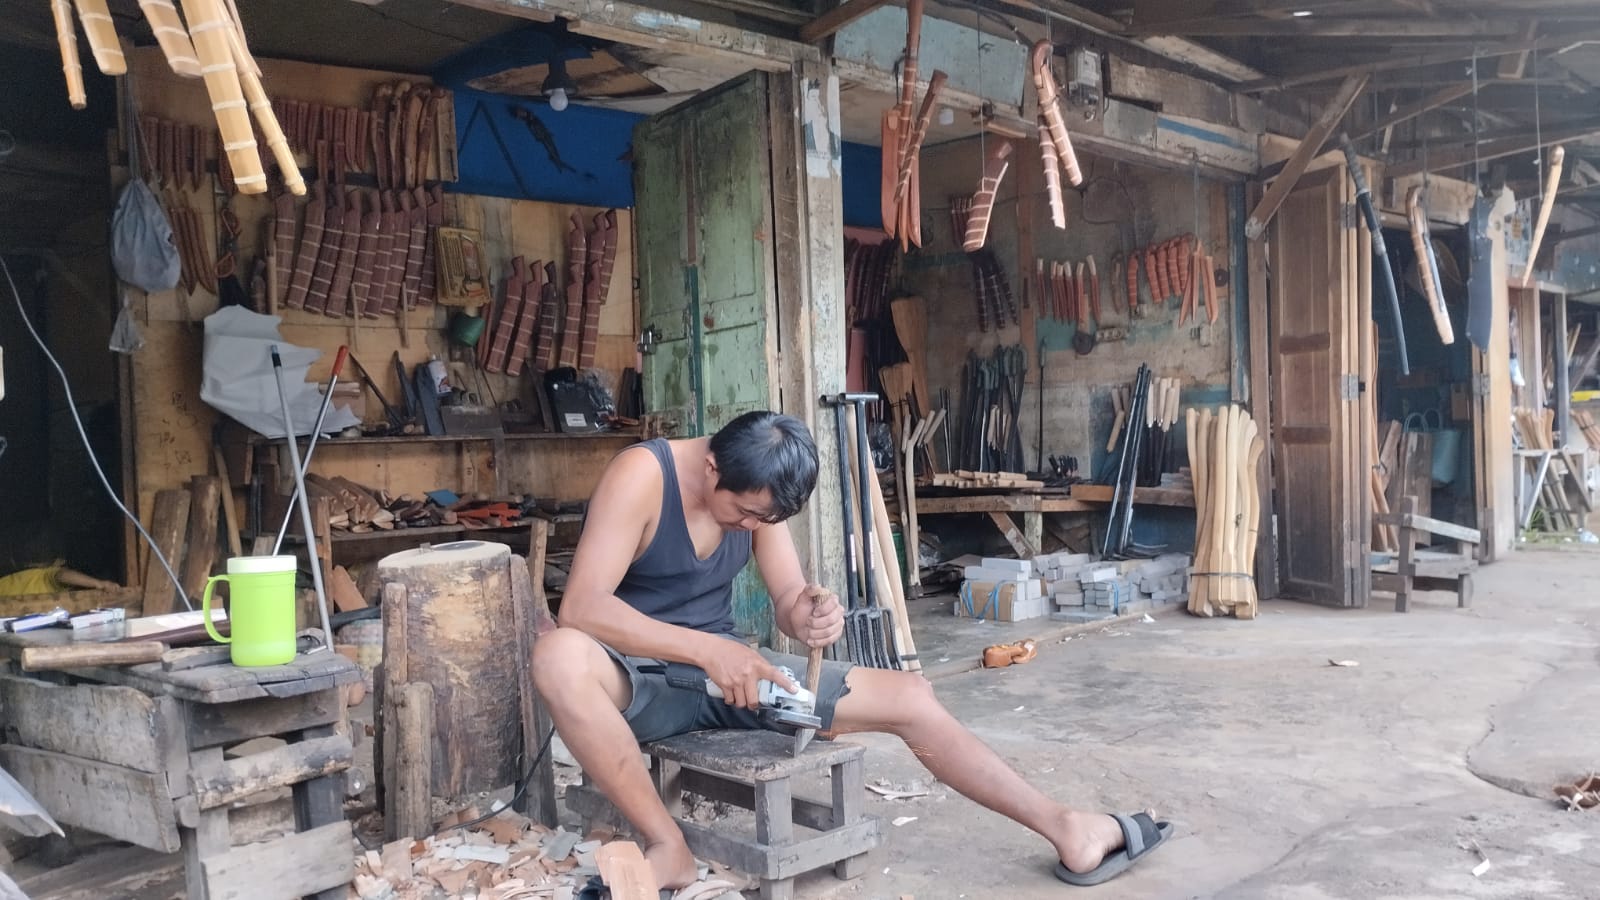 Lonjakan Harga Kopi di Pagaralam, Pedagang Alat Tani Ikut Untung